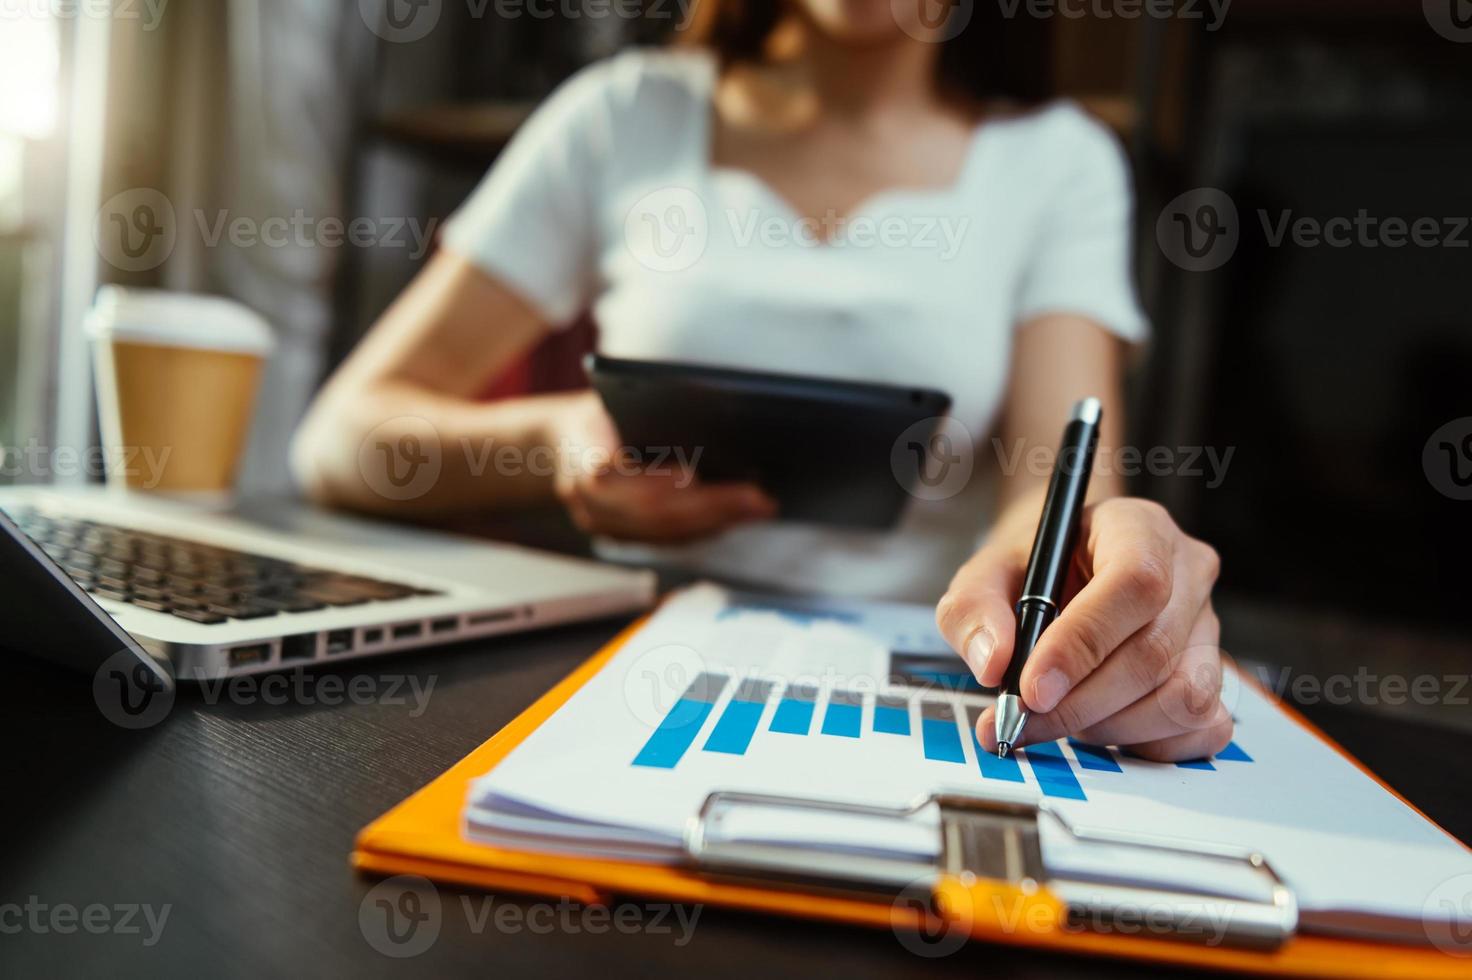 affärskvinna hand som arbetar med bärbar dator, surfplatta och smart telefon på kontoret med digital marknadsföringsmedia foto